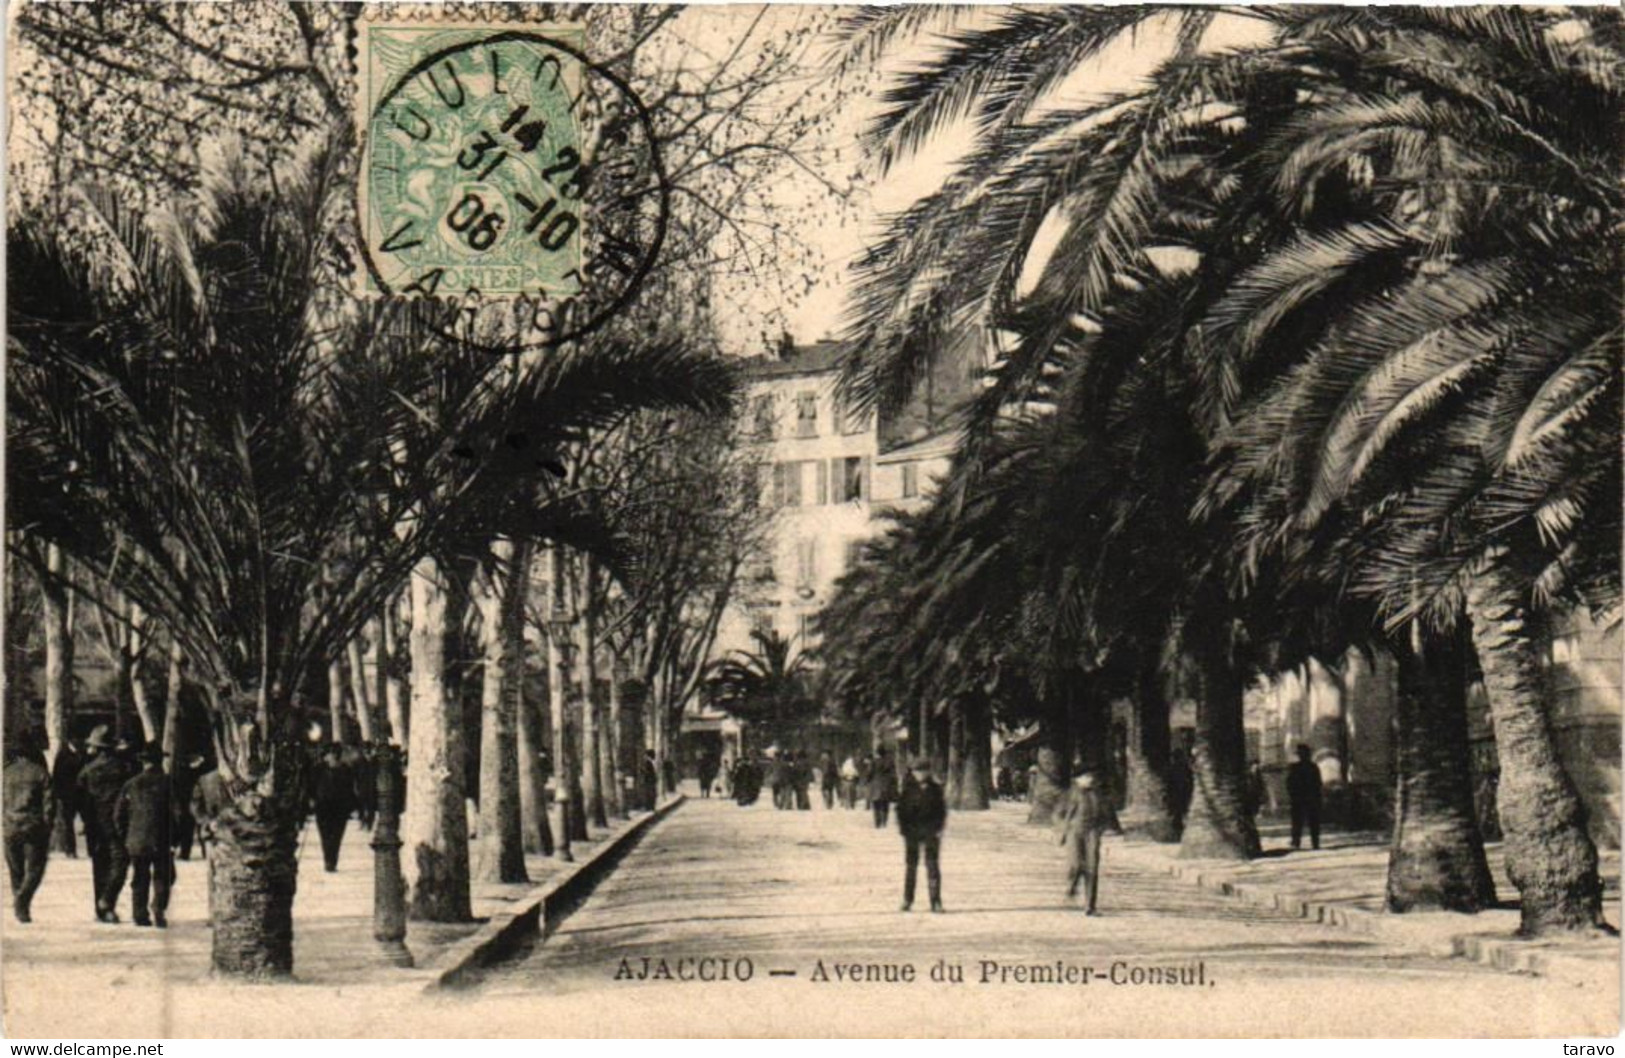 CORSE - AJACCIO -  Avenue Du Premier Consul - 1906 J. Moretti - Ajaccio